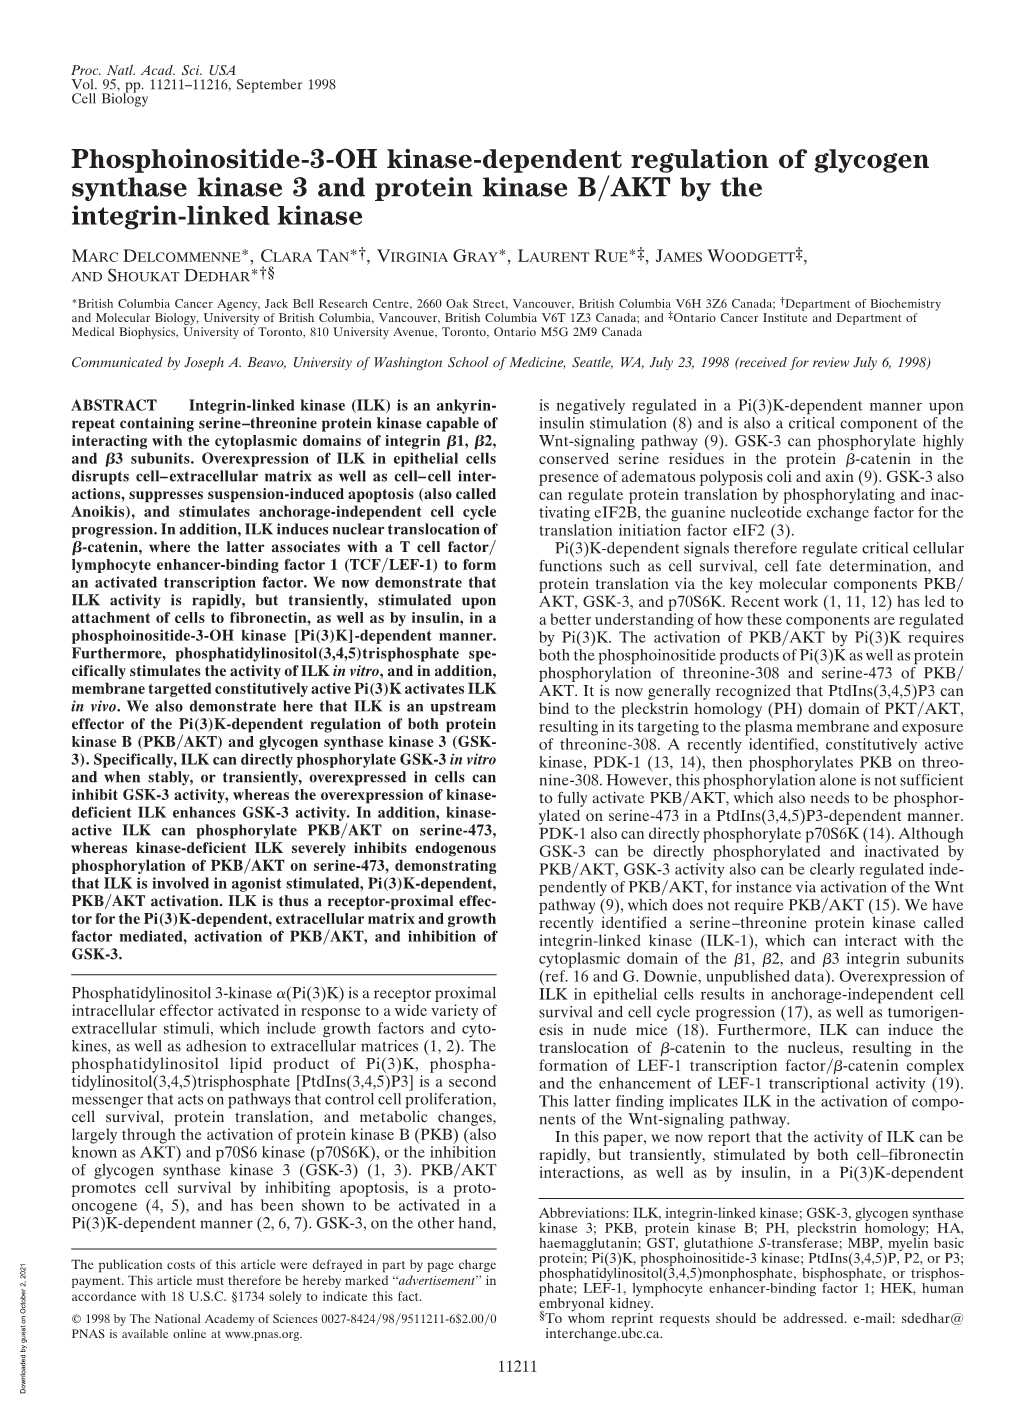 Phosphoinositide-3-OH Kinase-Dependent Regulation of Glycogen Synthase Kinase 3 and Protein Kinase B͞AKT by the Integrin-Linked Kinase